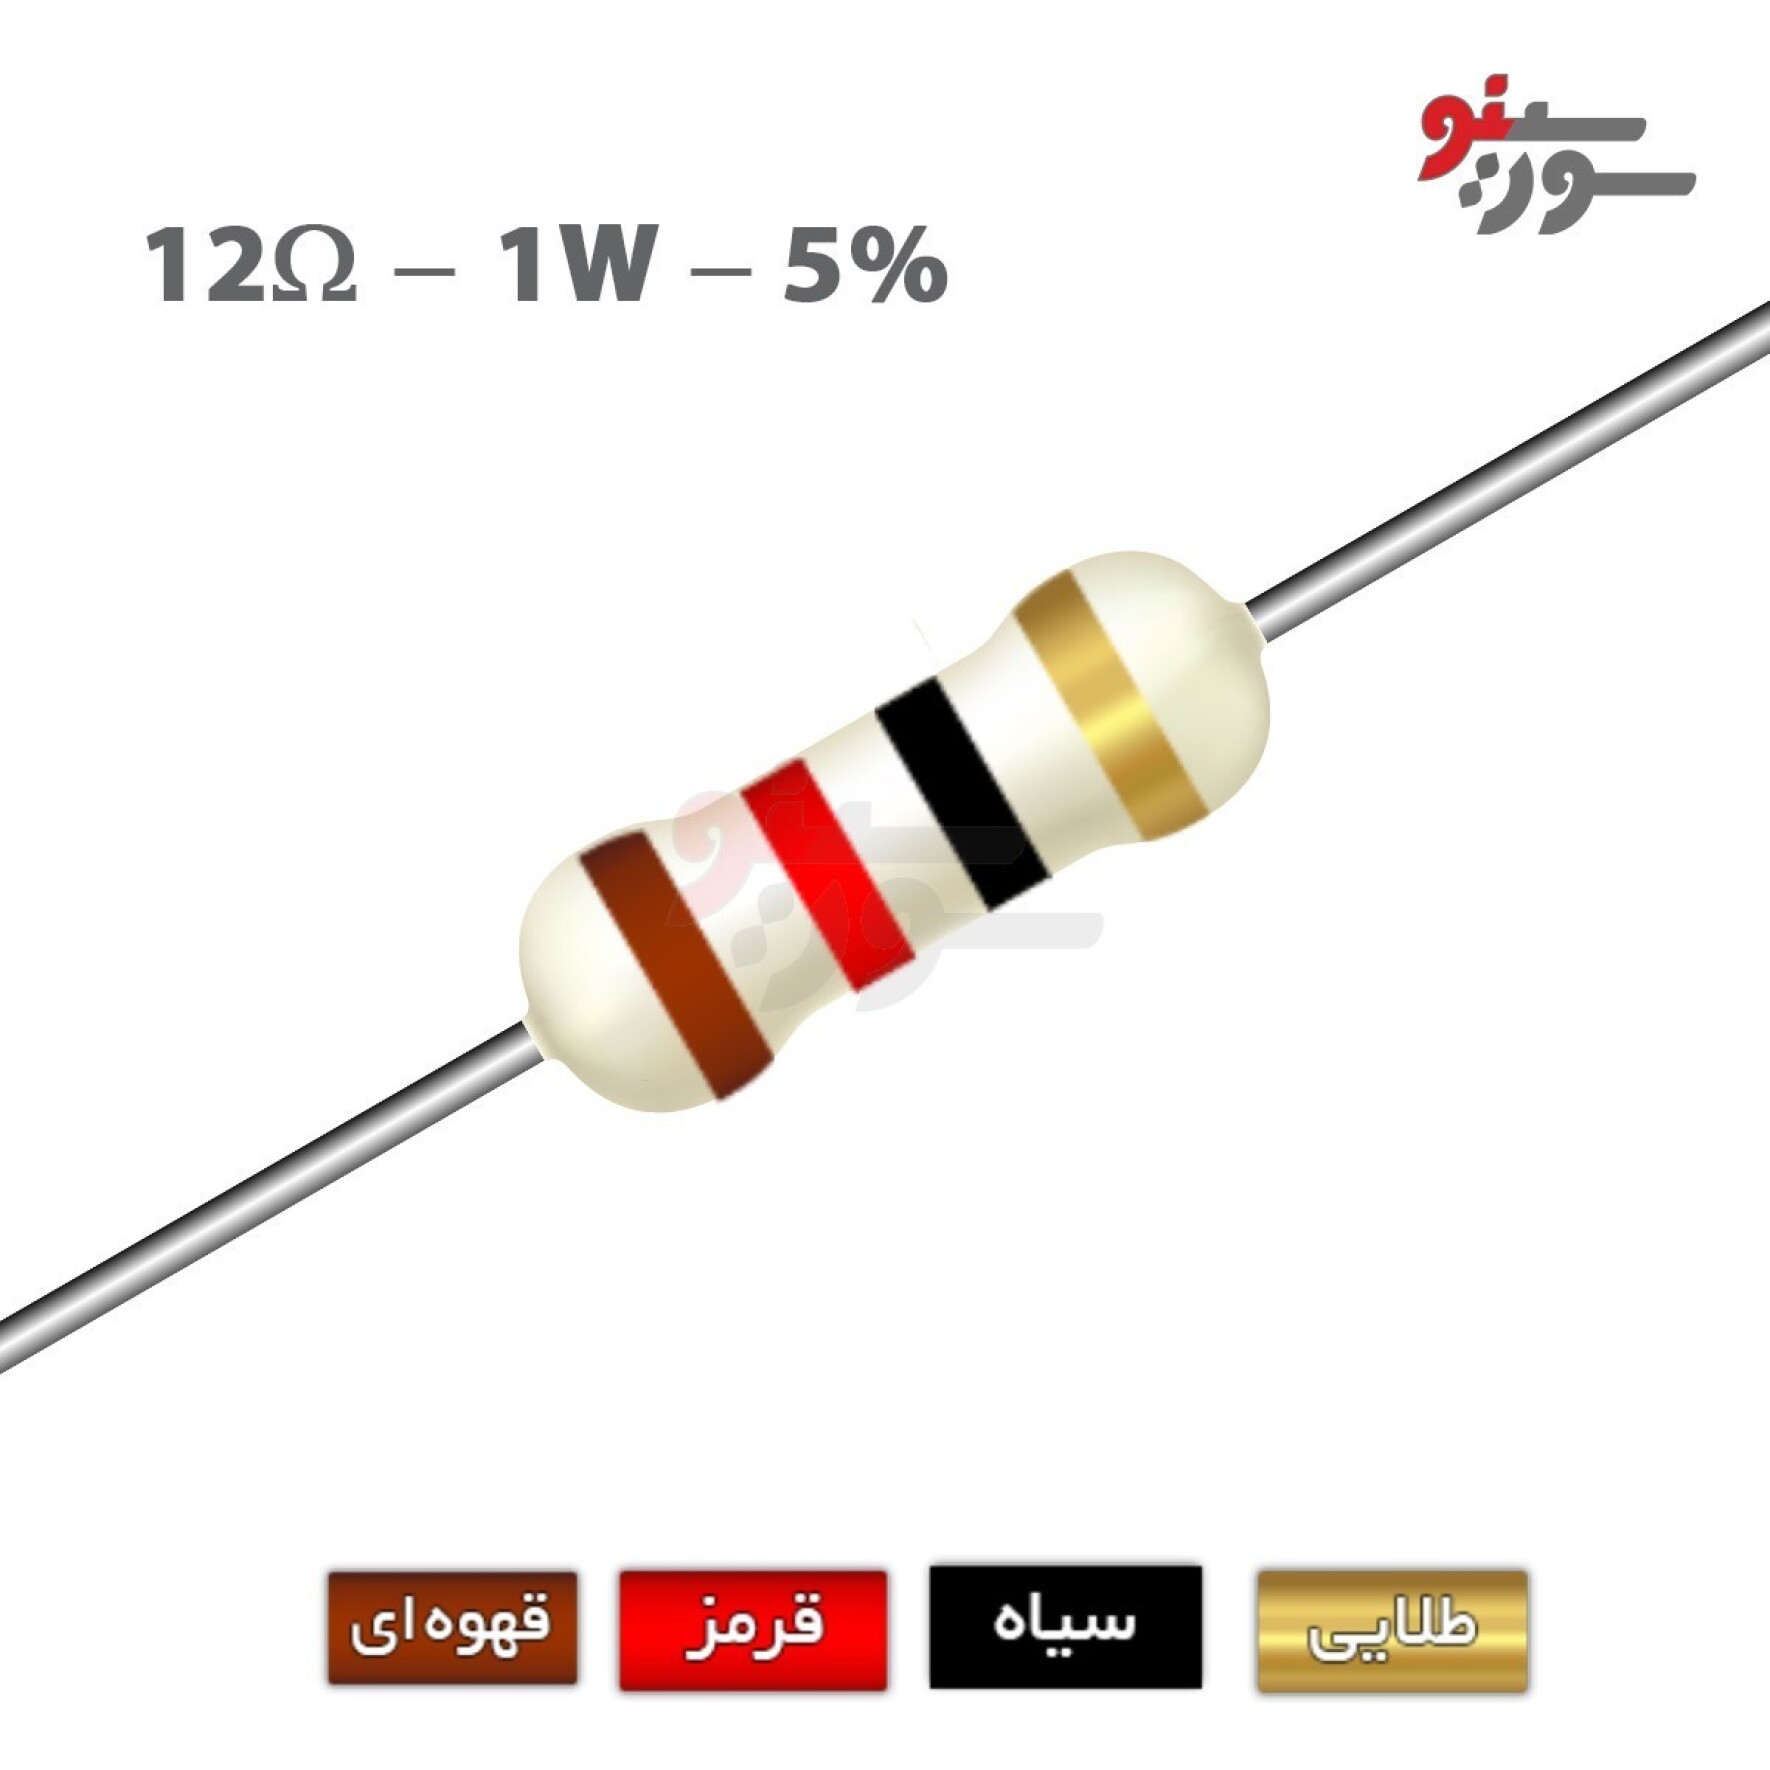 مقاومت 12 اهم 1 وات (12R-1W-5%)